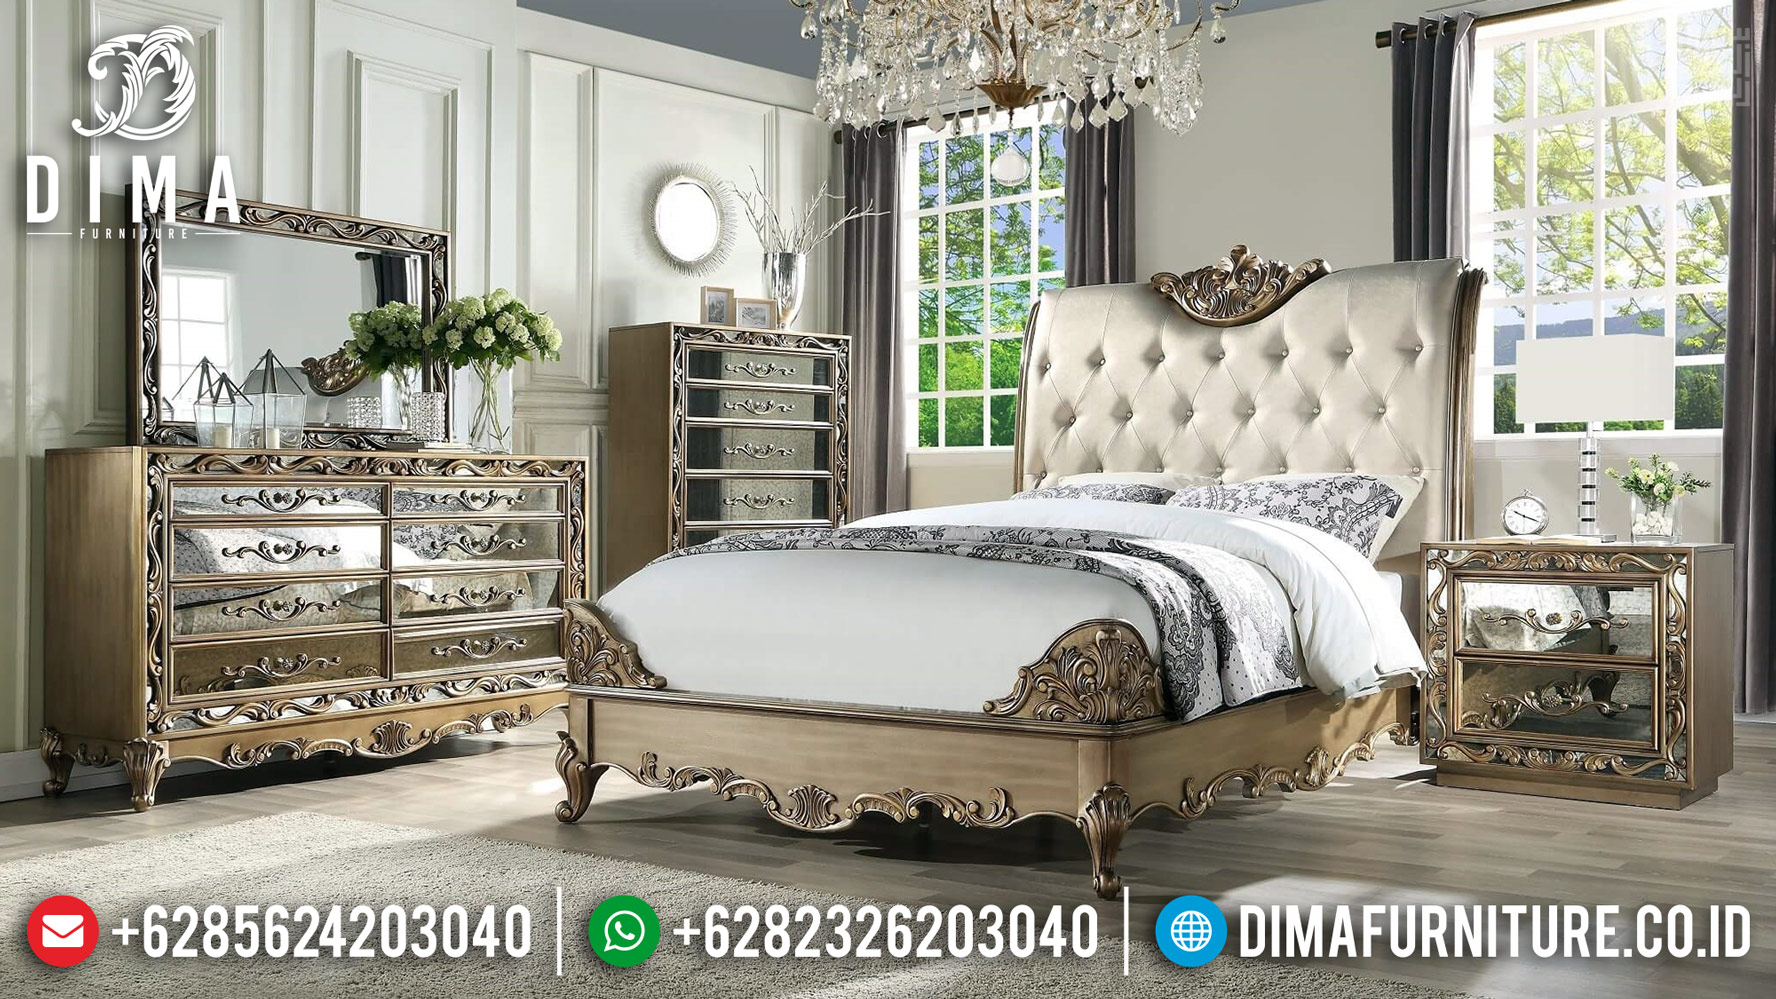 Bedroom Sets Luxury Modern, Kamar Set Ukiran Jepara, Tempat Tidur Mewah BT-0386